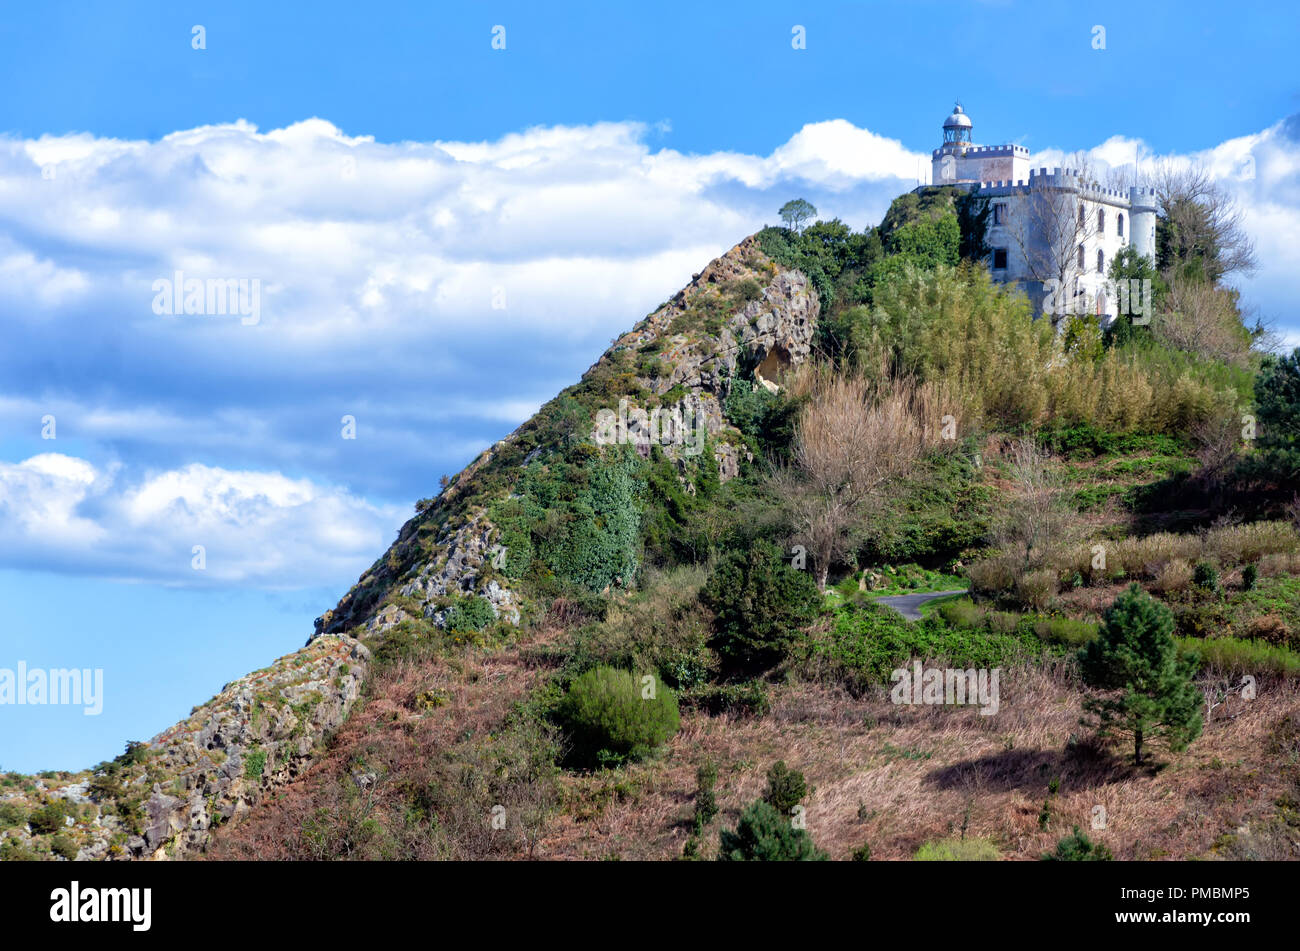 Alte Festung in den Bergen mit dem Namen 'El Almirante" in der Nähe von San Sebastian, Spanien Stockfoto